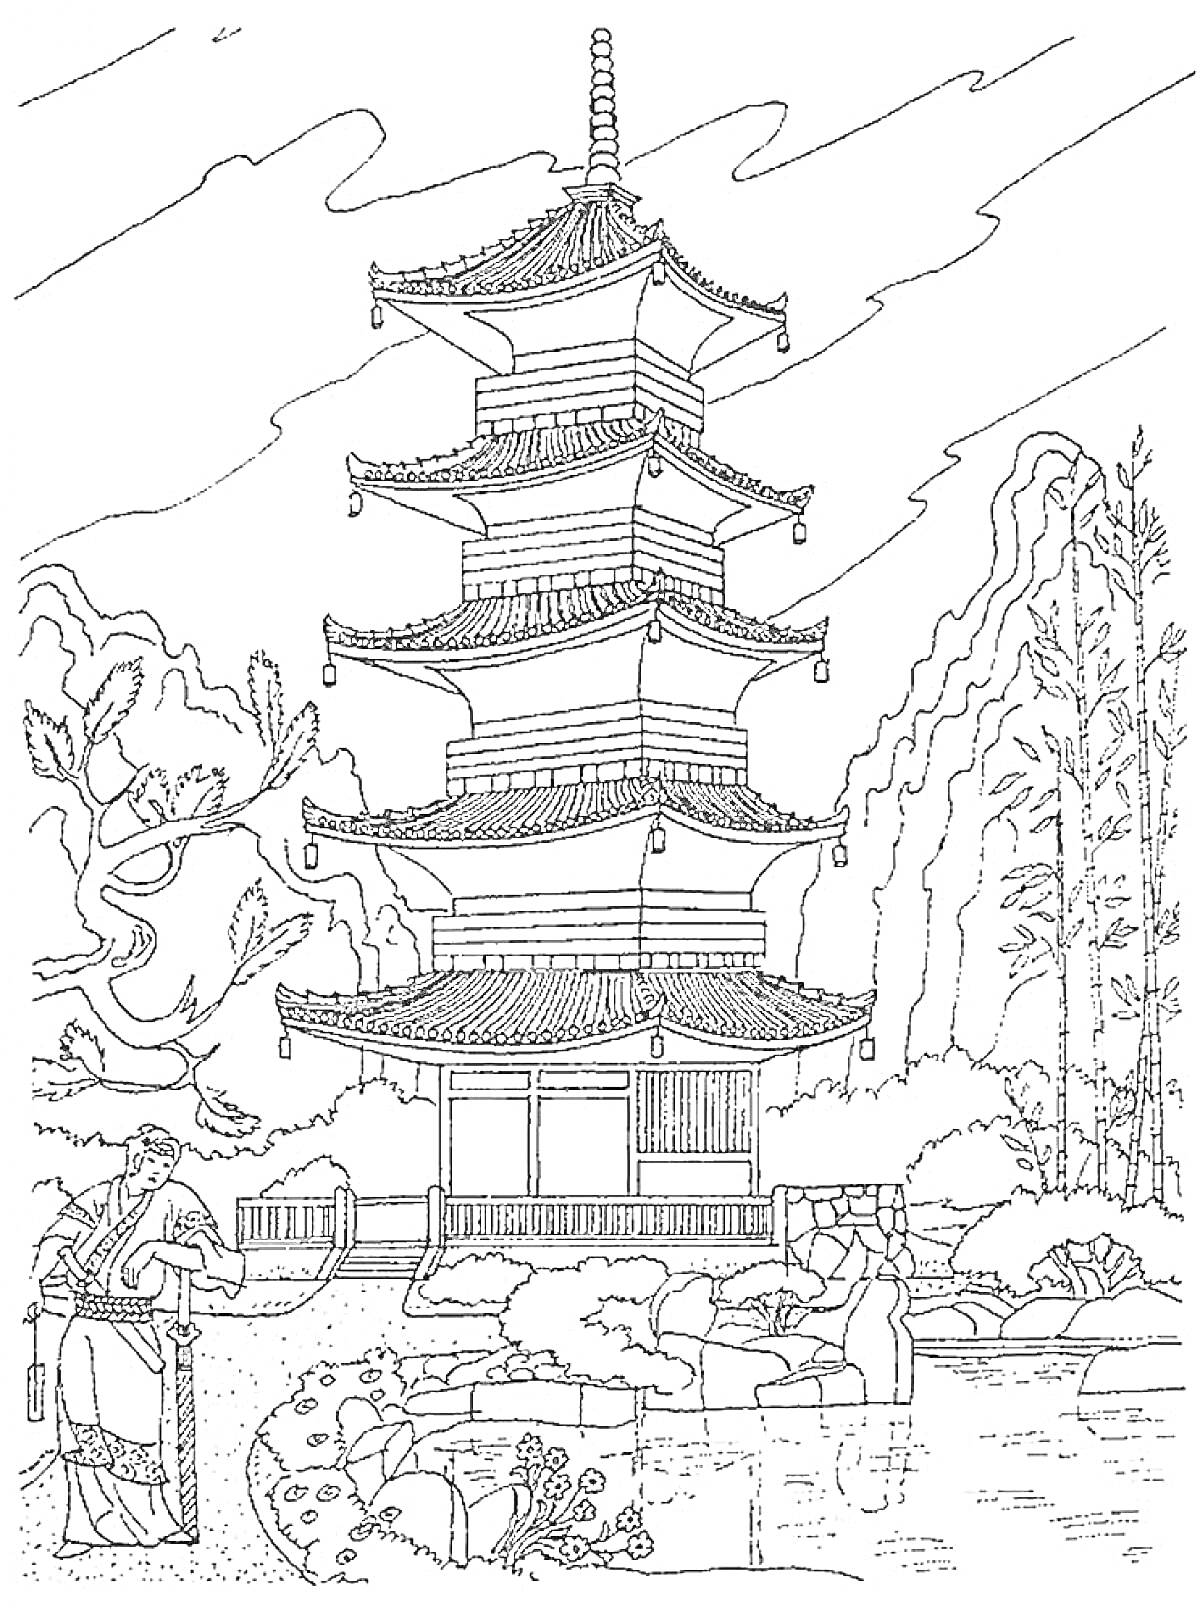 Раскраска Пагода с садом и мостиком у подножья, человек в традиционной одежде